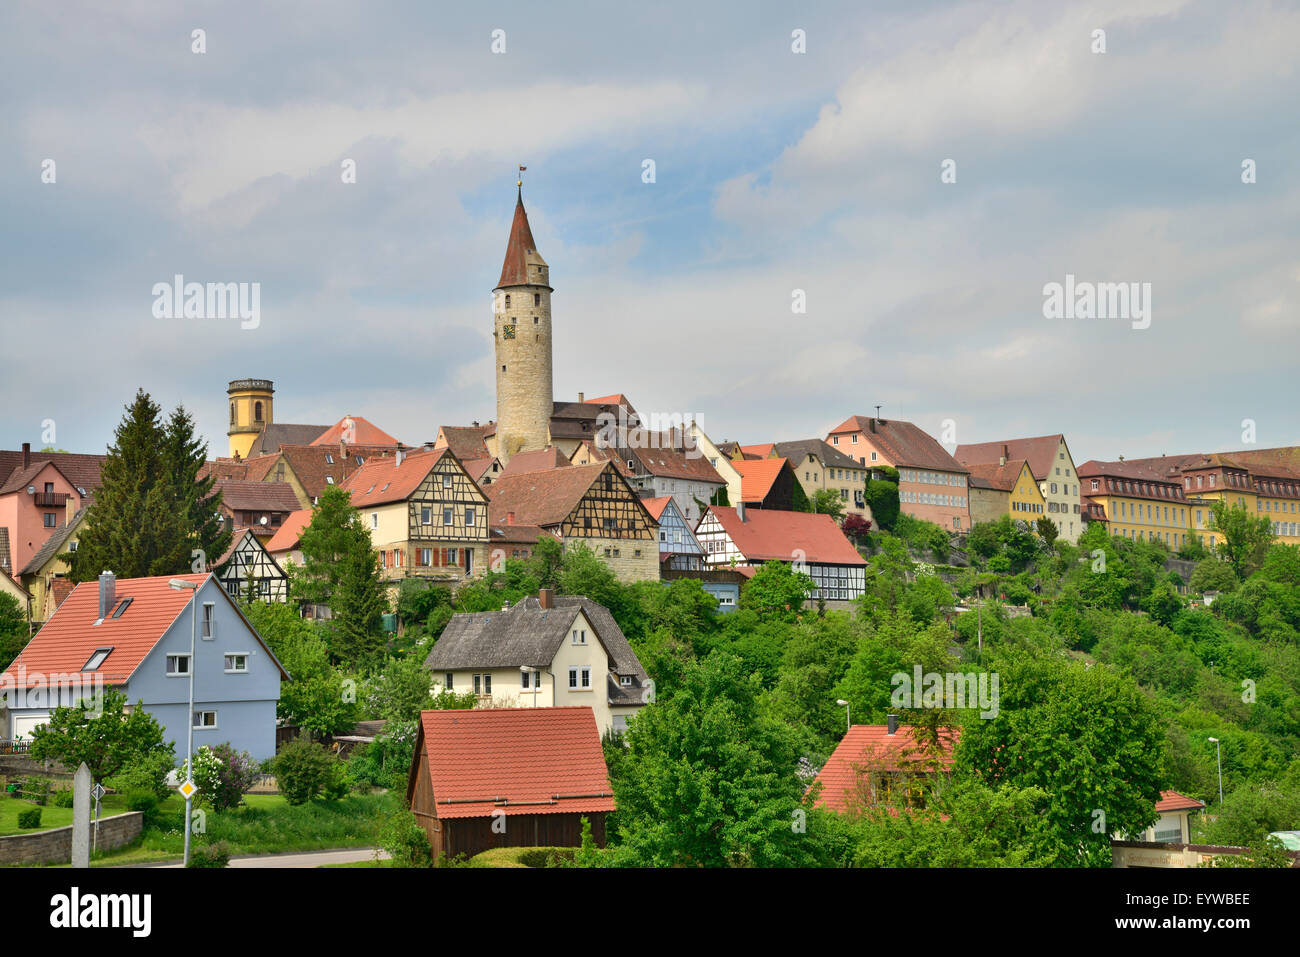 Townscape, Kirchberg an der Jagst, Baden-Württemberg, Germany Stock Photo